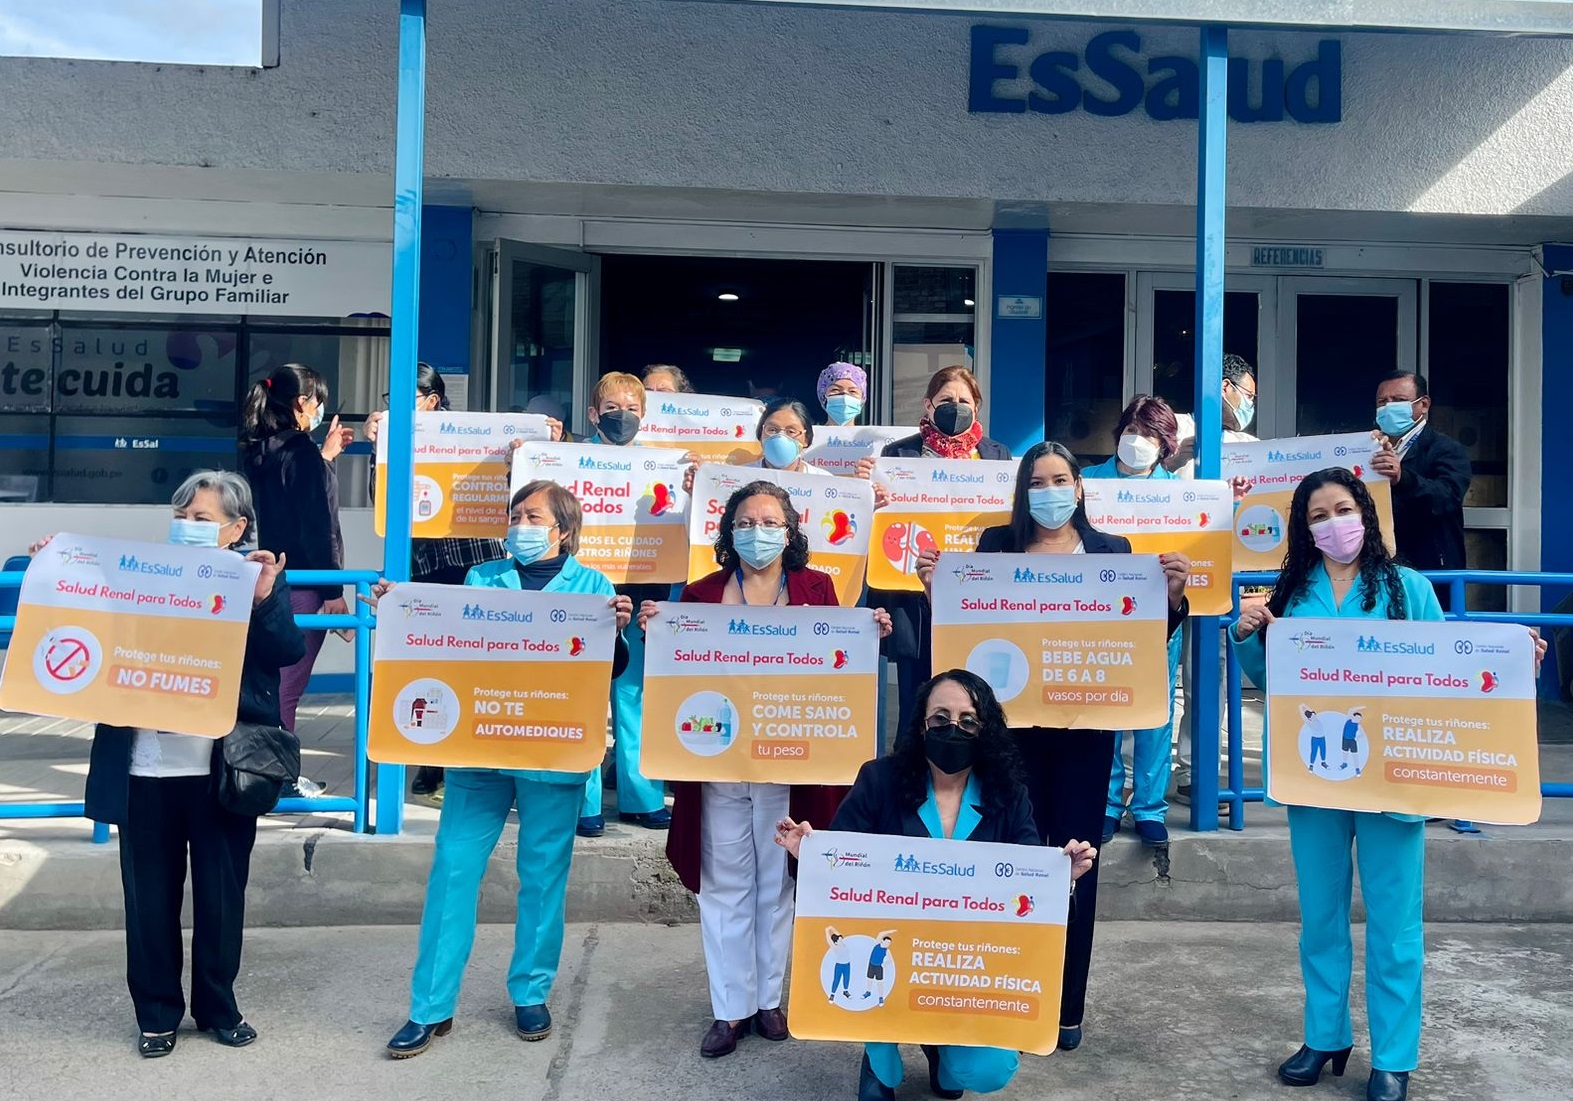 Essalud - EsSalud Cajamarca inaugura Preventorio de Salud Renal que beneficiará a más 263 mil asegurados de toda la región